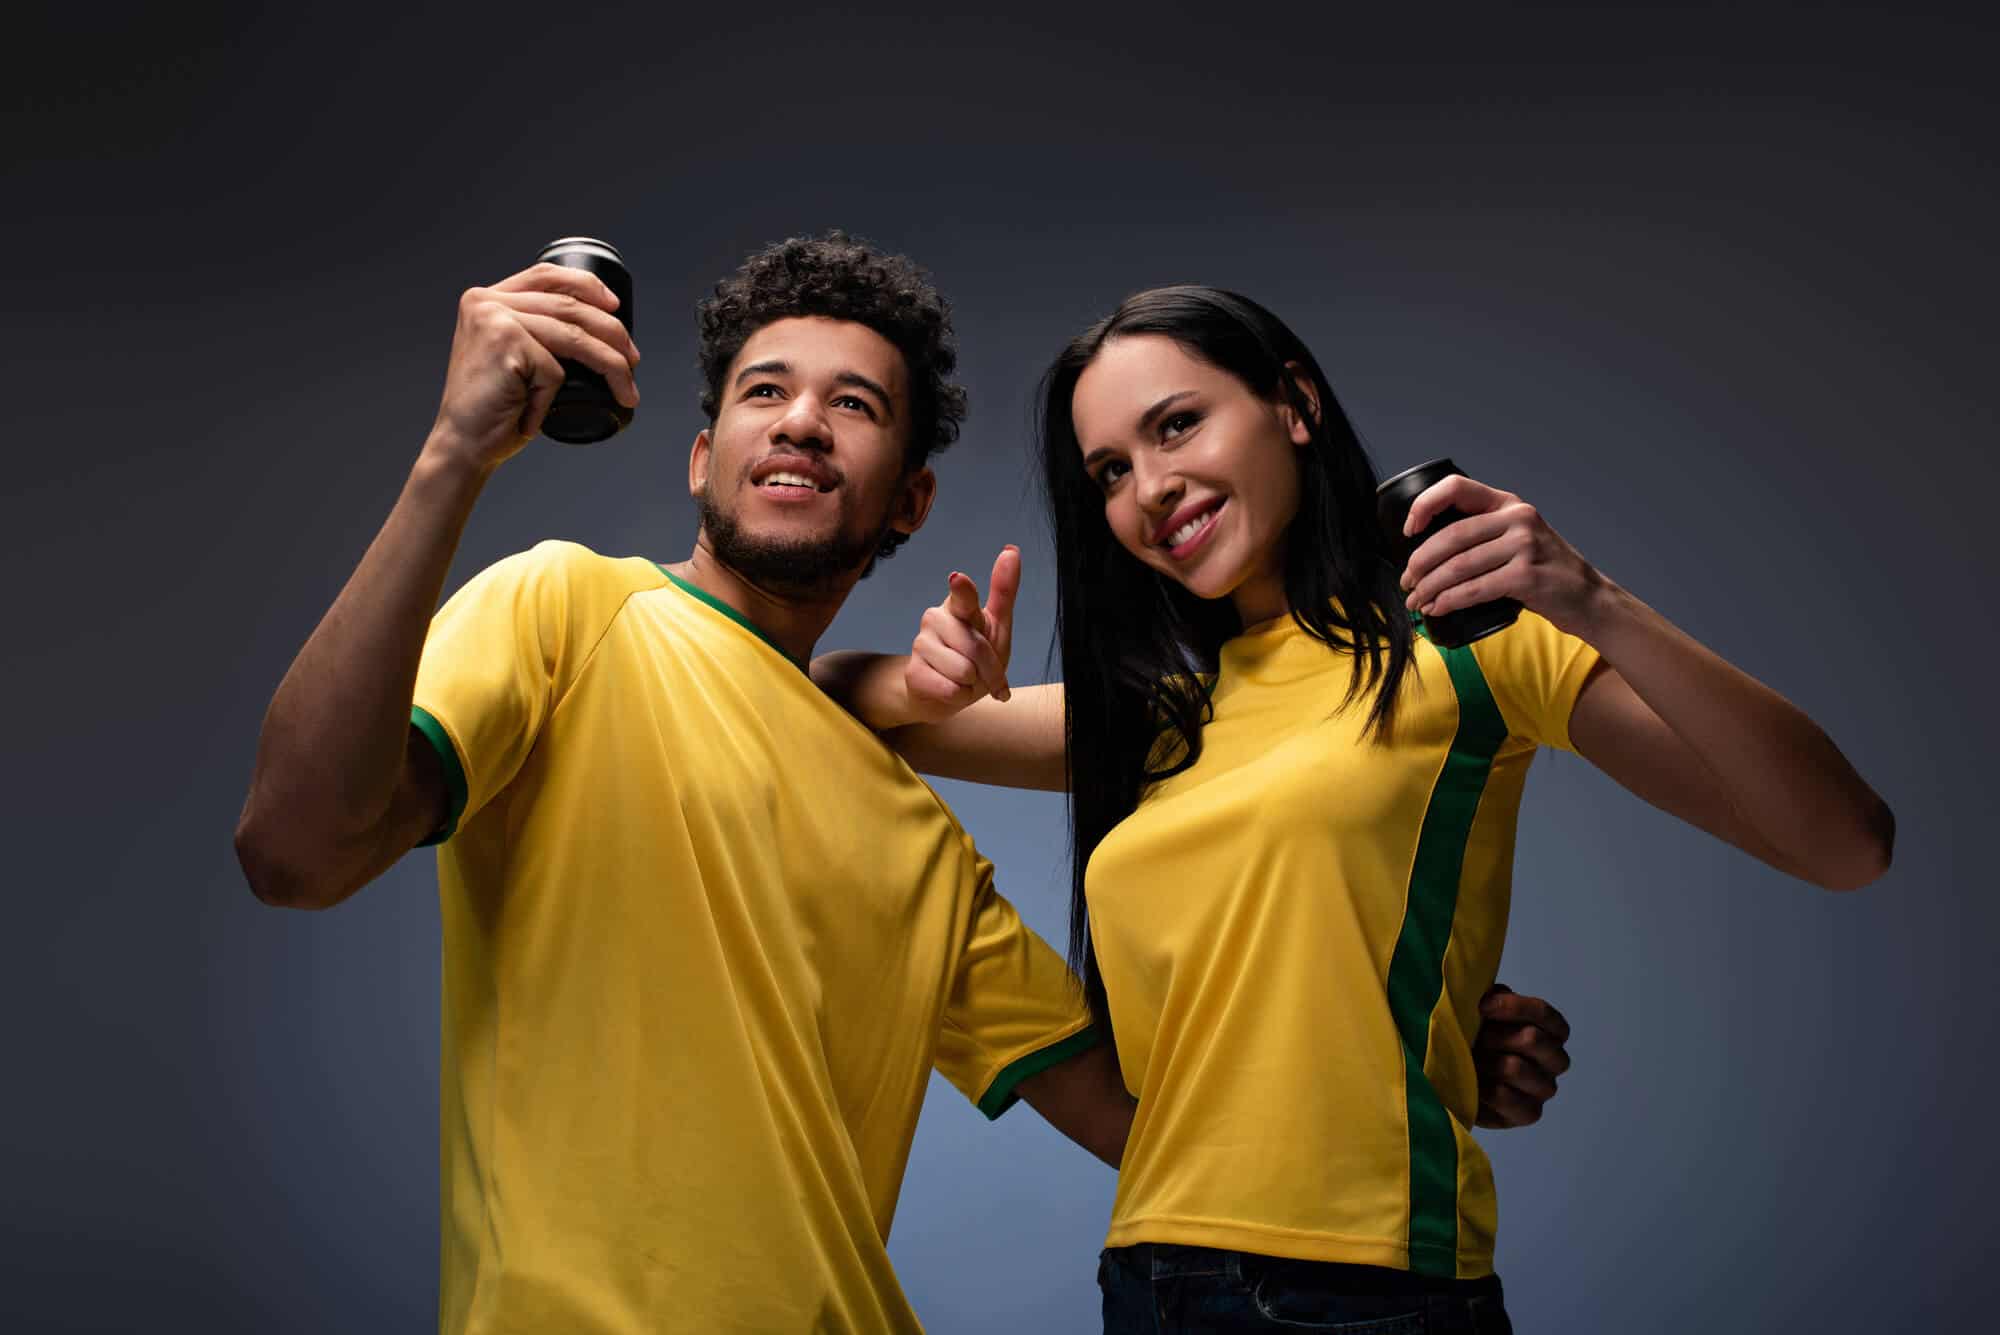 איש ואישה עם חולצת דרייפיט צהובה נהנים מול המצלמה